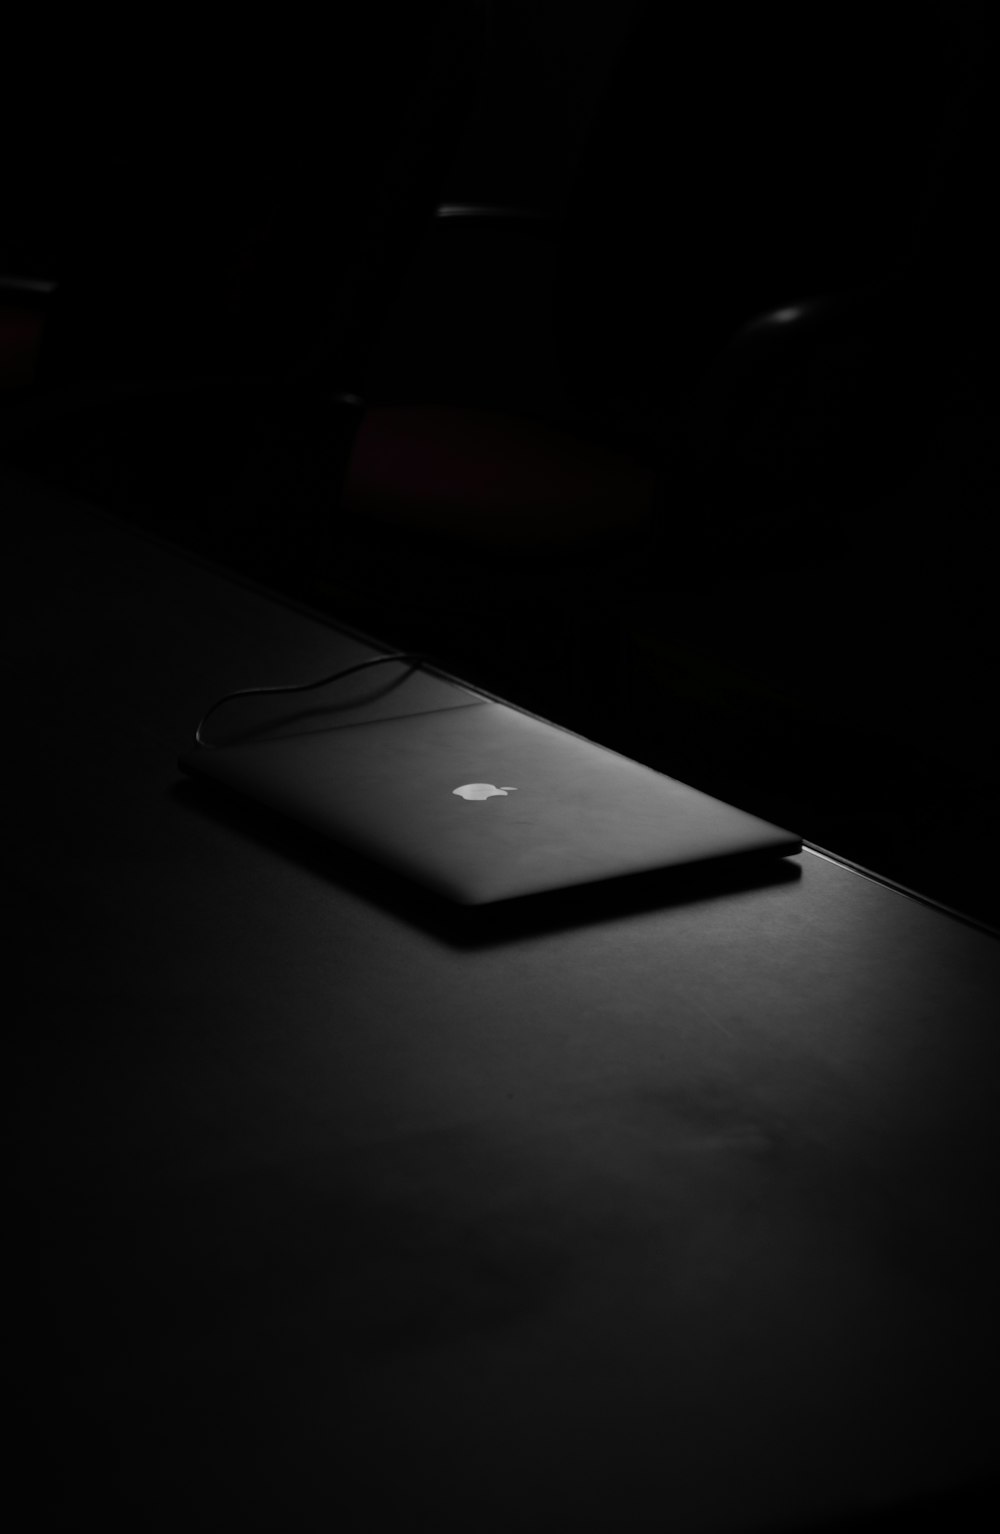 MacBook on table inside dark room